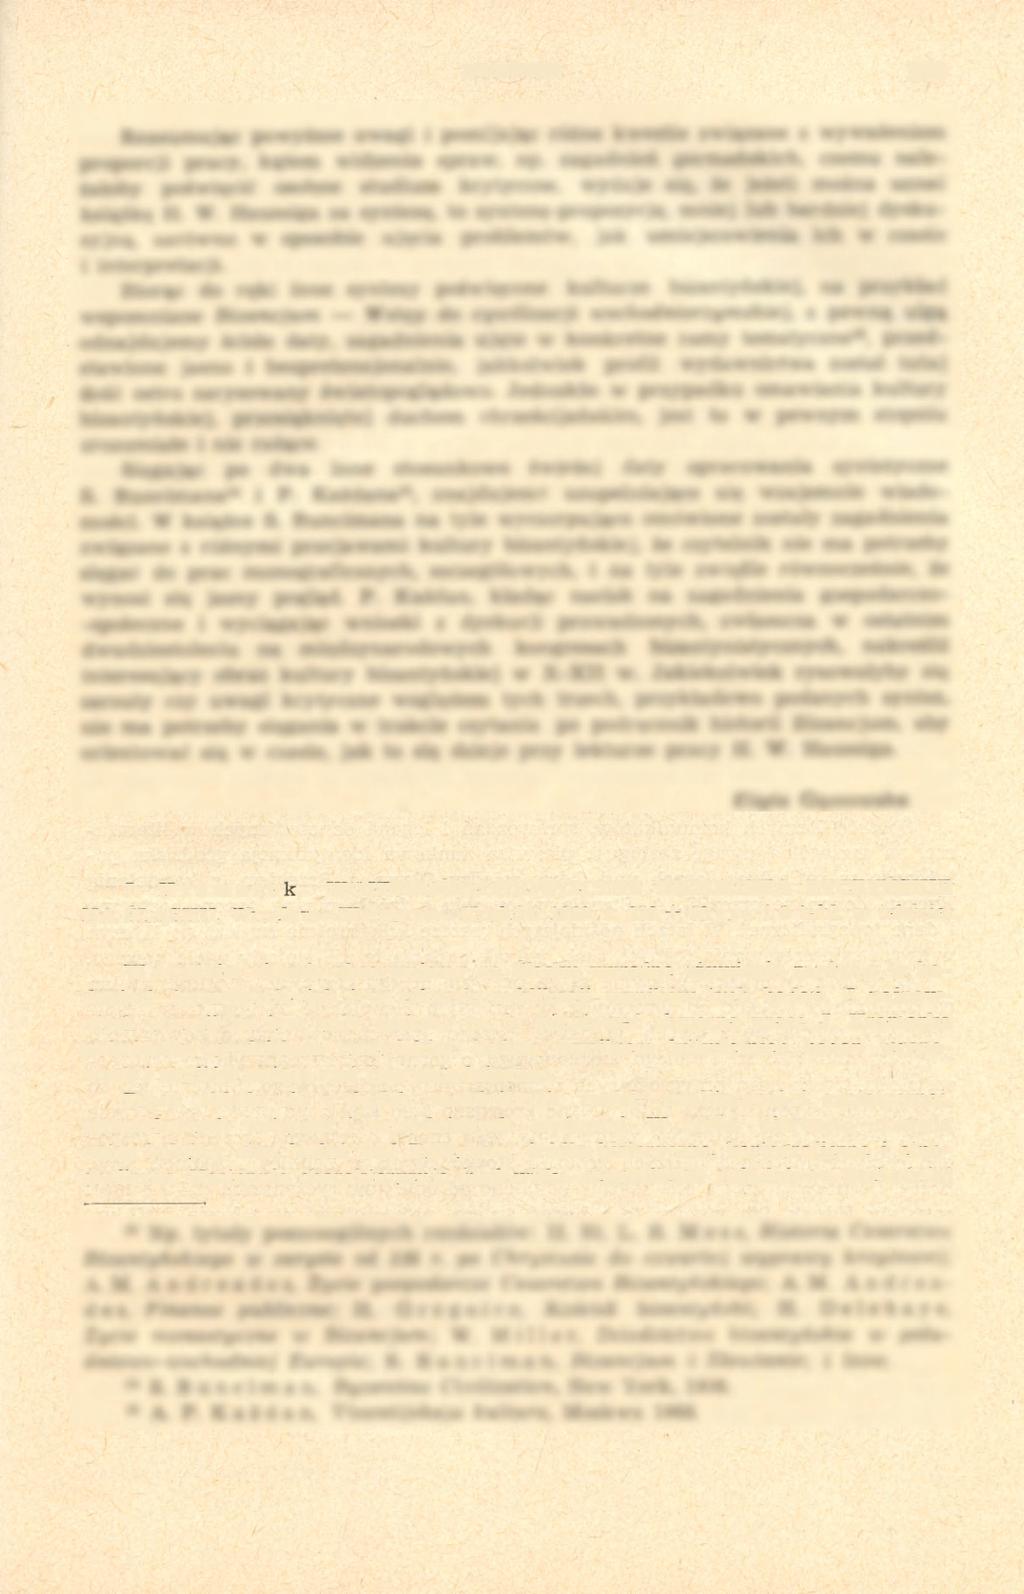 Archeologia Polski 1972, 17, 1 pp. 239-244 239 J. Kramarek, WCZESNOŚREDNIOWIECZNE GRODZISKA RYCZYŃSKIE NA ŚLĄSKU, Wrocław Warszawa Kraków 1969, s. 239 + 62 ryc. i 9 tabl. w tekście.